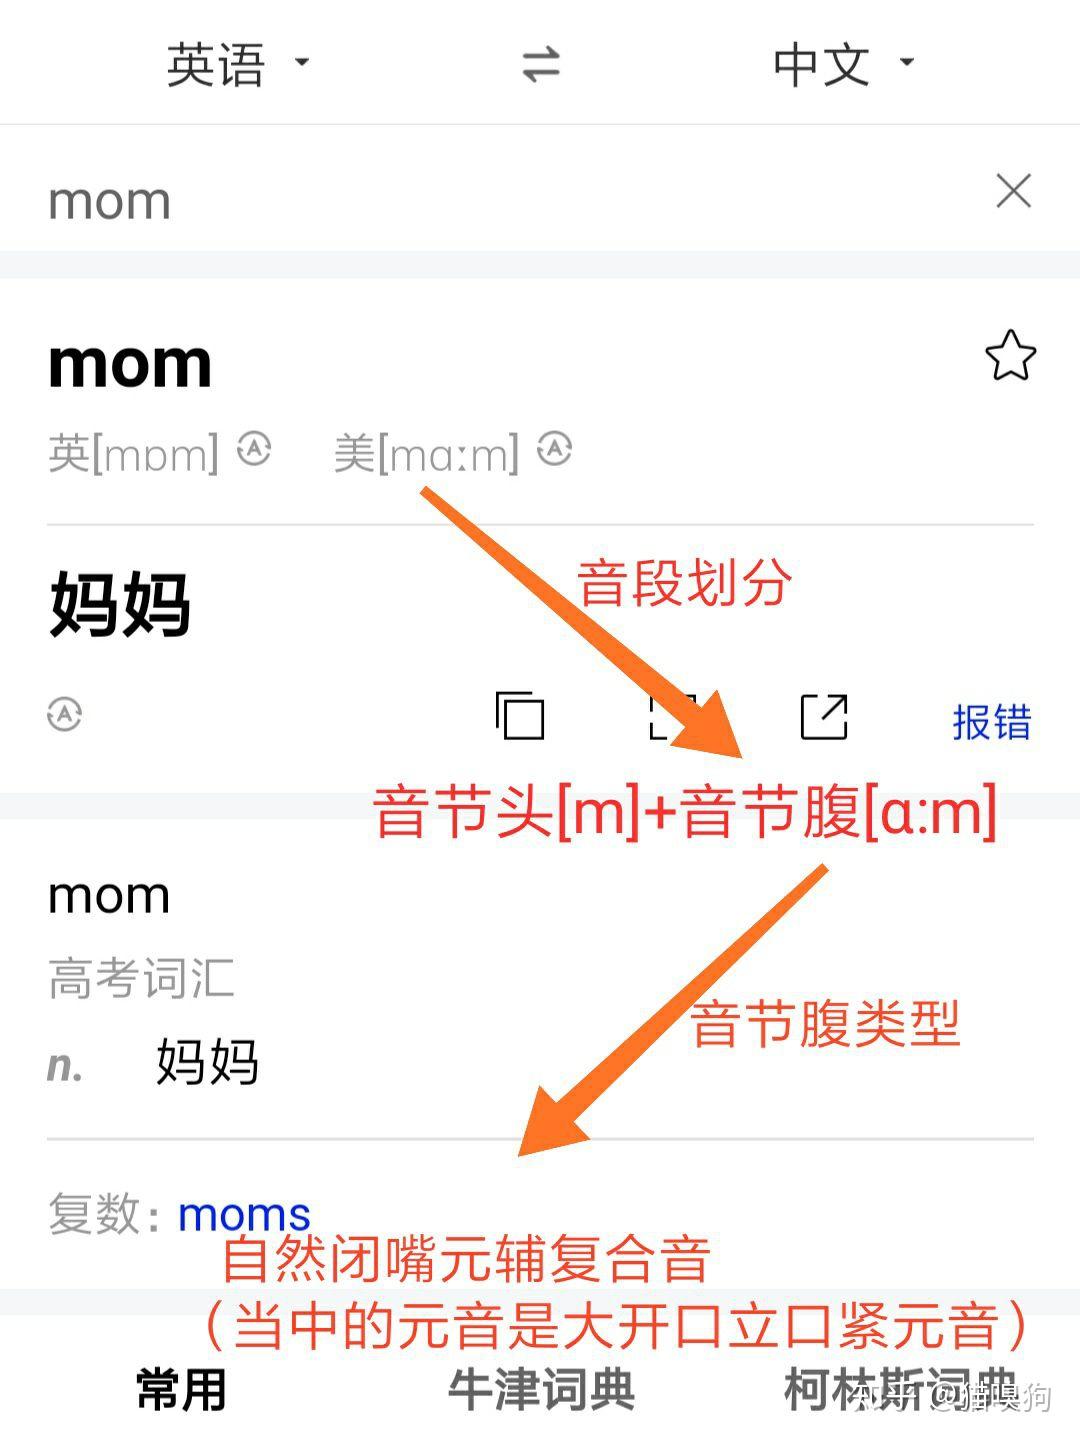 英语「mom」发音近似「mang-m」还是「